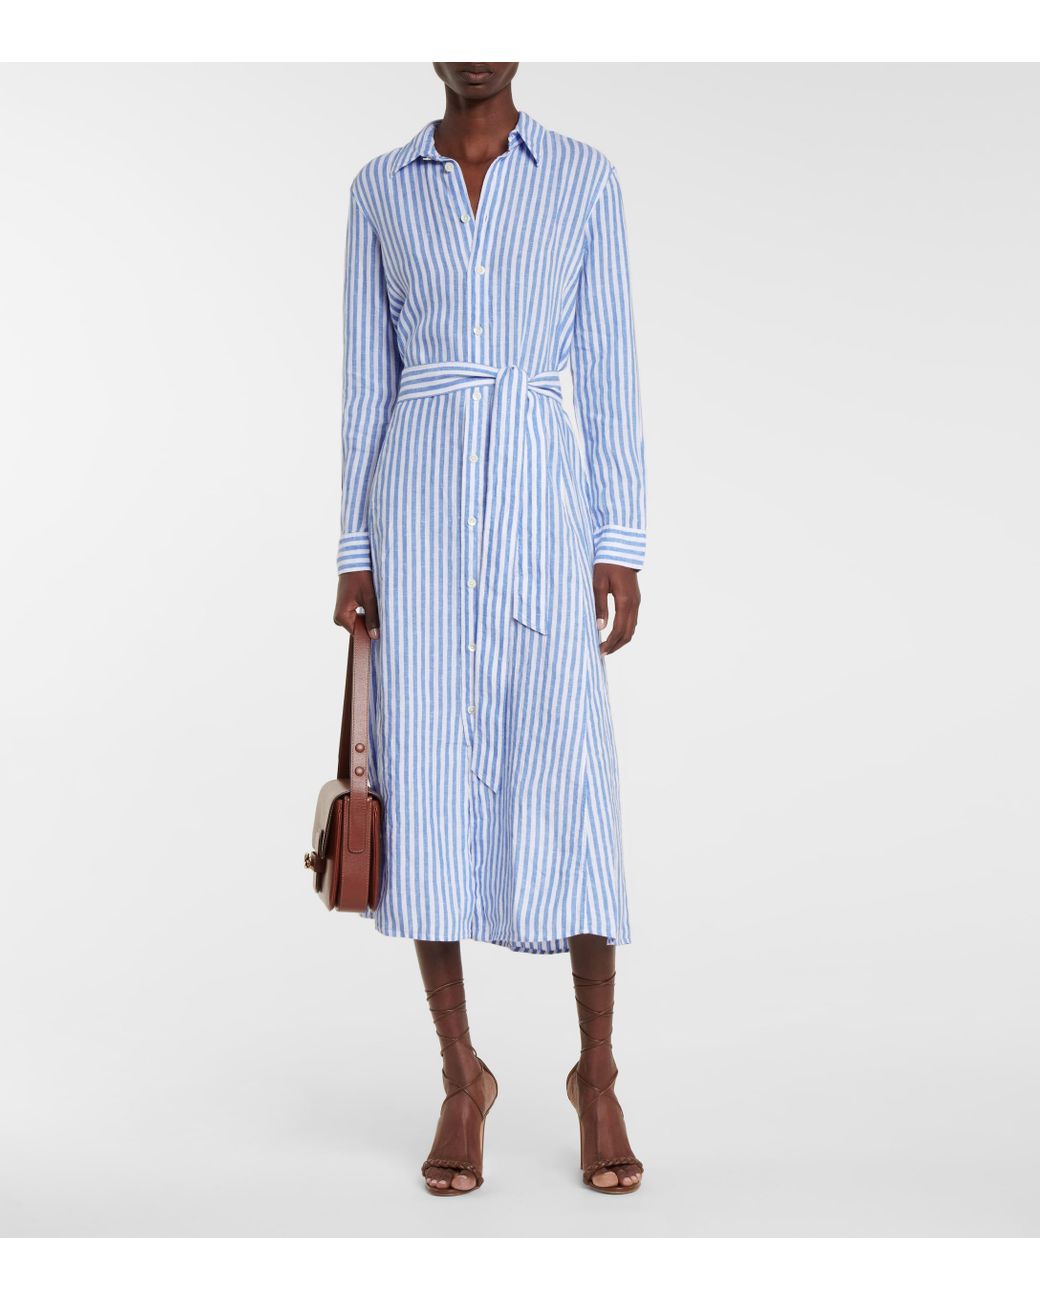 Polo Ralph Lauren Striped Linen Shirt Dress in Blue | Lyst